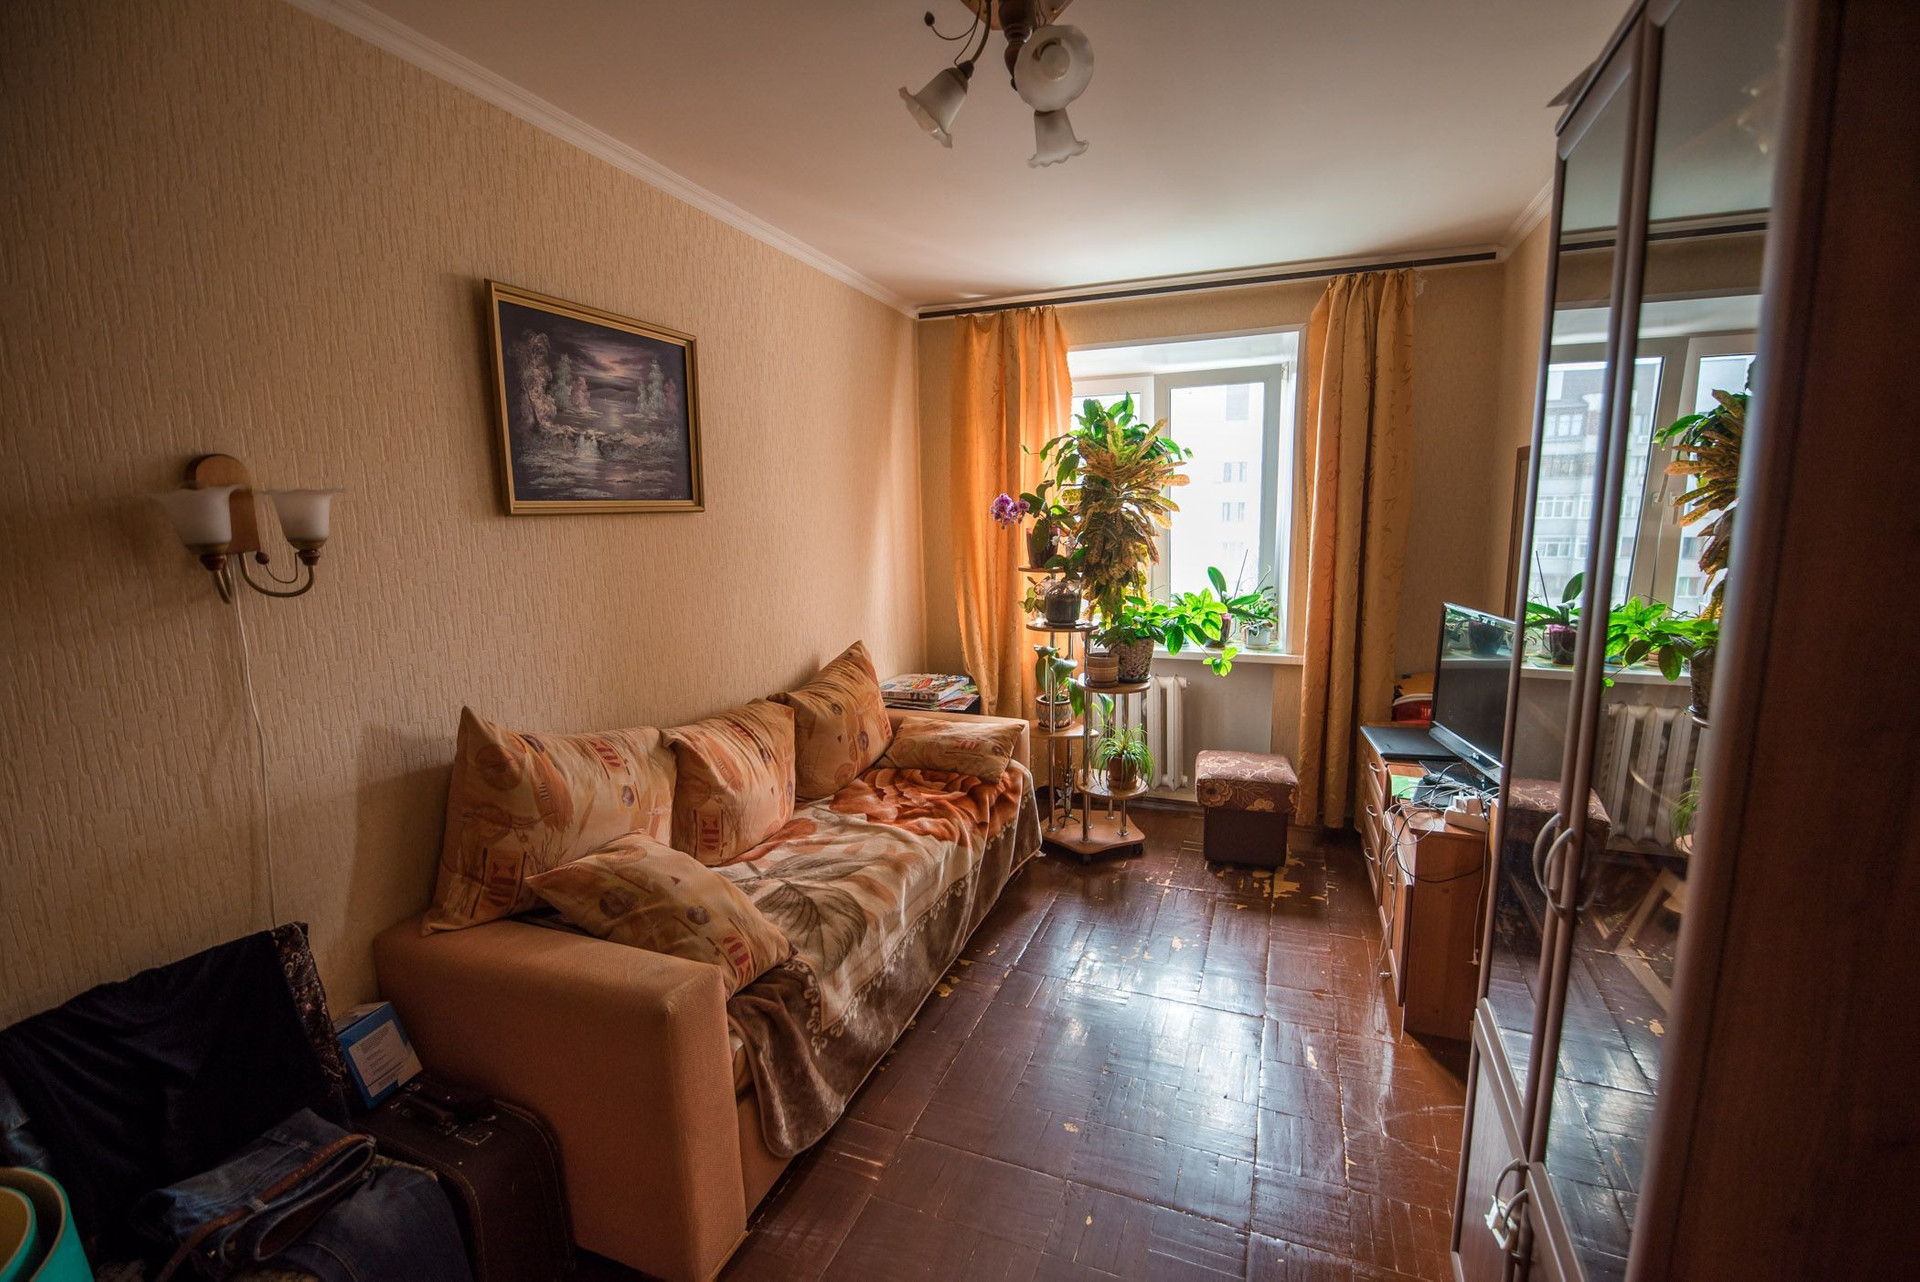 Купить квартиру в ти. Квартира обычная. Обычная квартира в России. Обычная жилая комната. Дешевые комнаты.